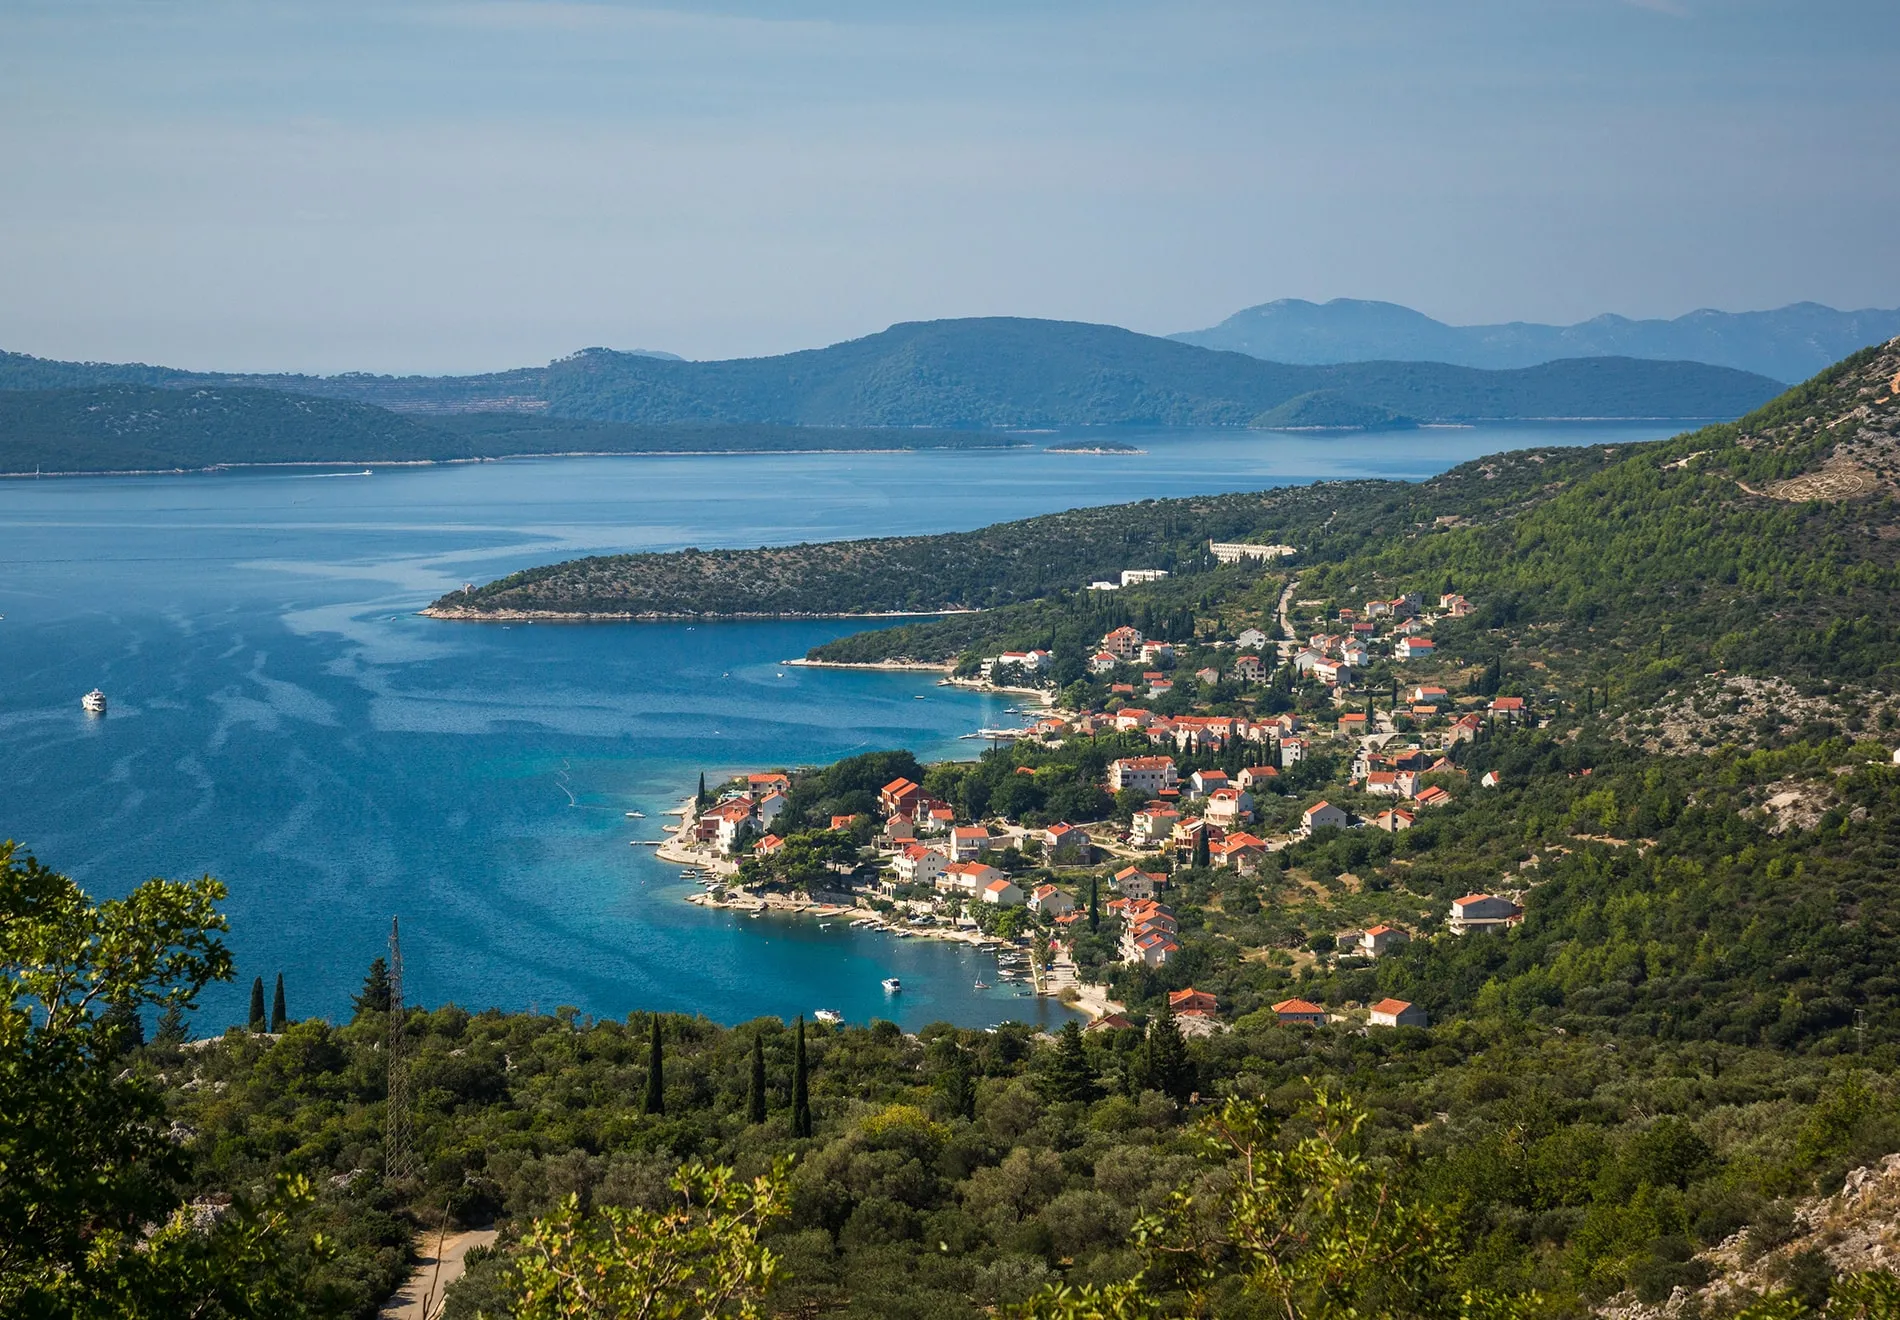 Dubrovnik - Slano Bay